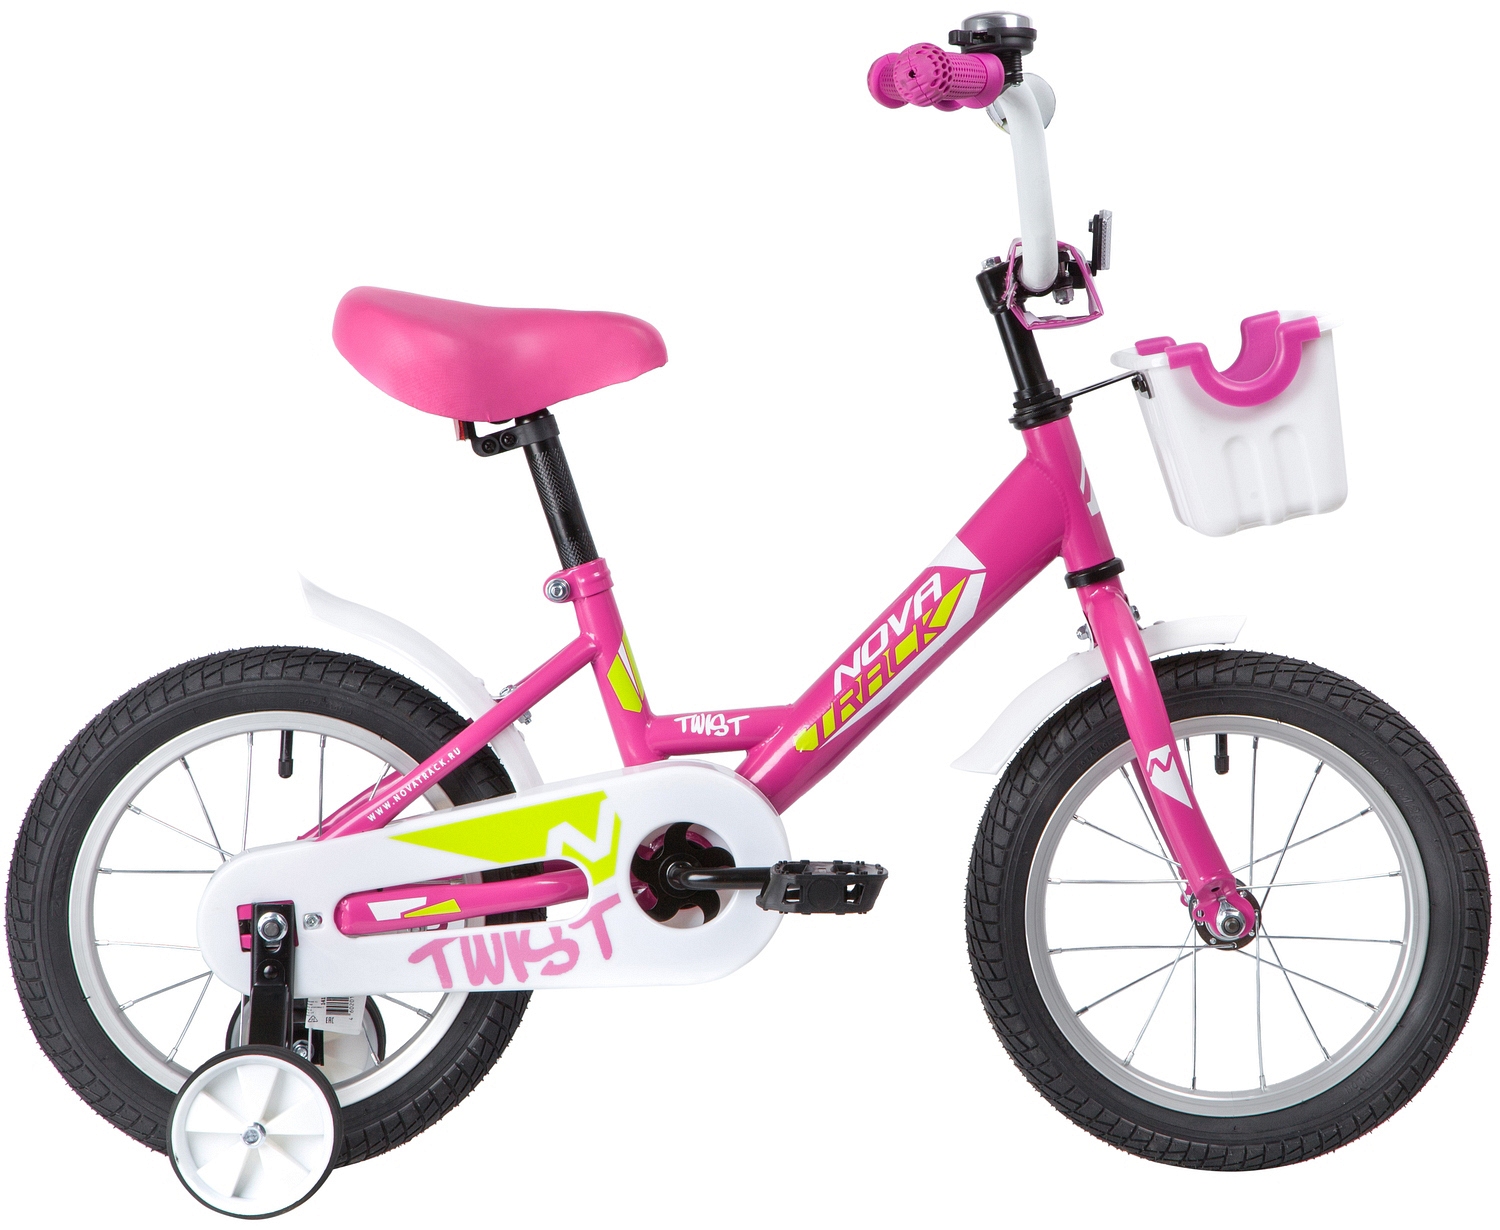  Отзывы о Детском велосипеде Novatrack Twist 14 с корзинкой 2020